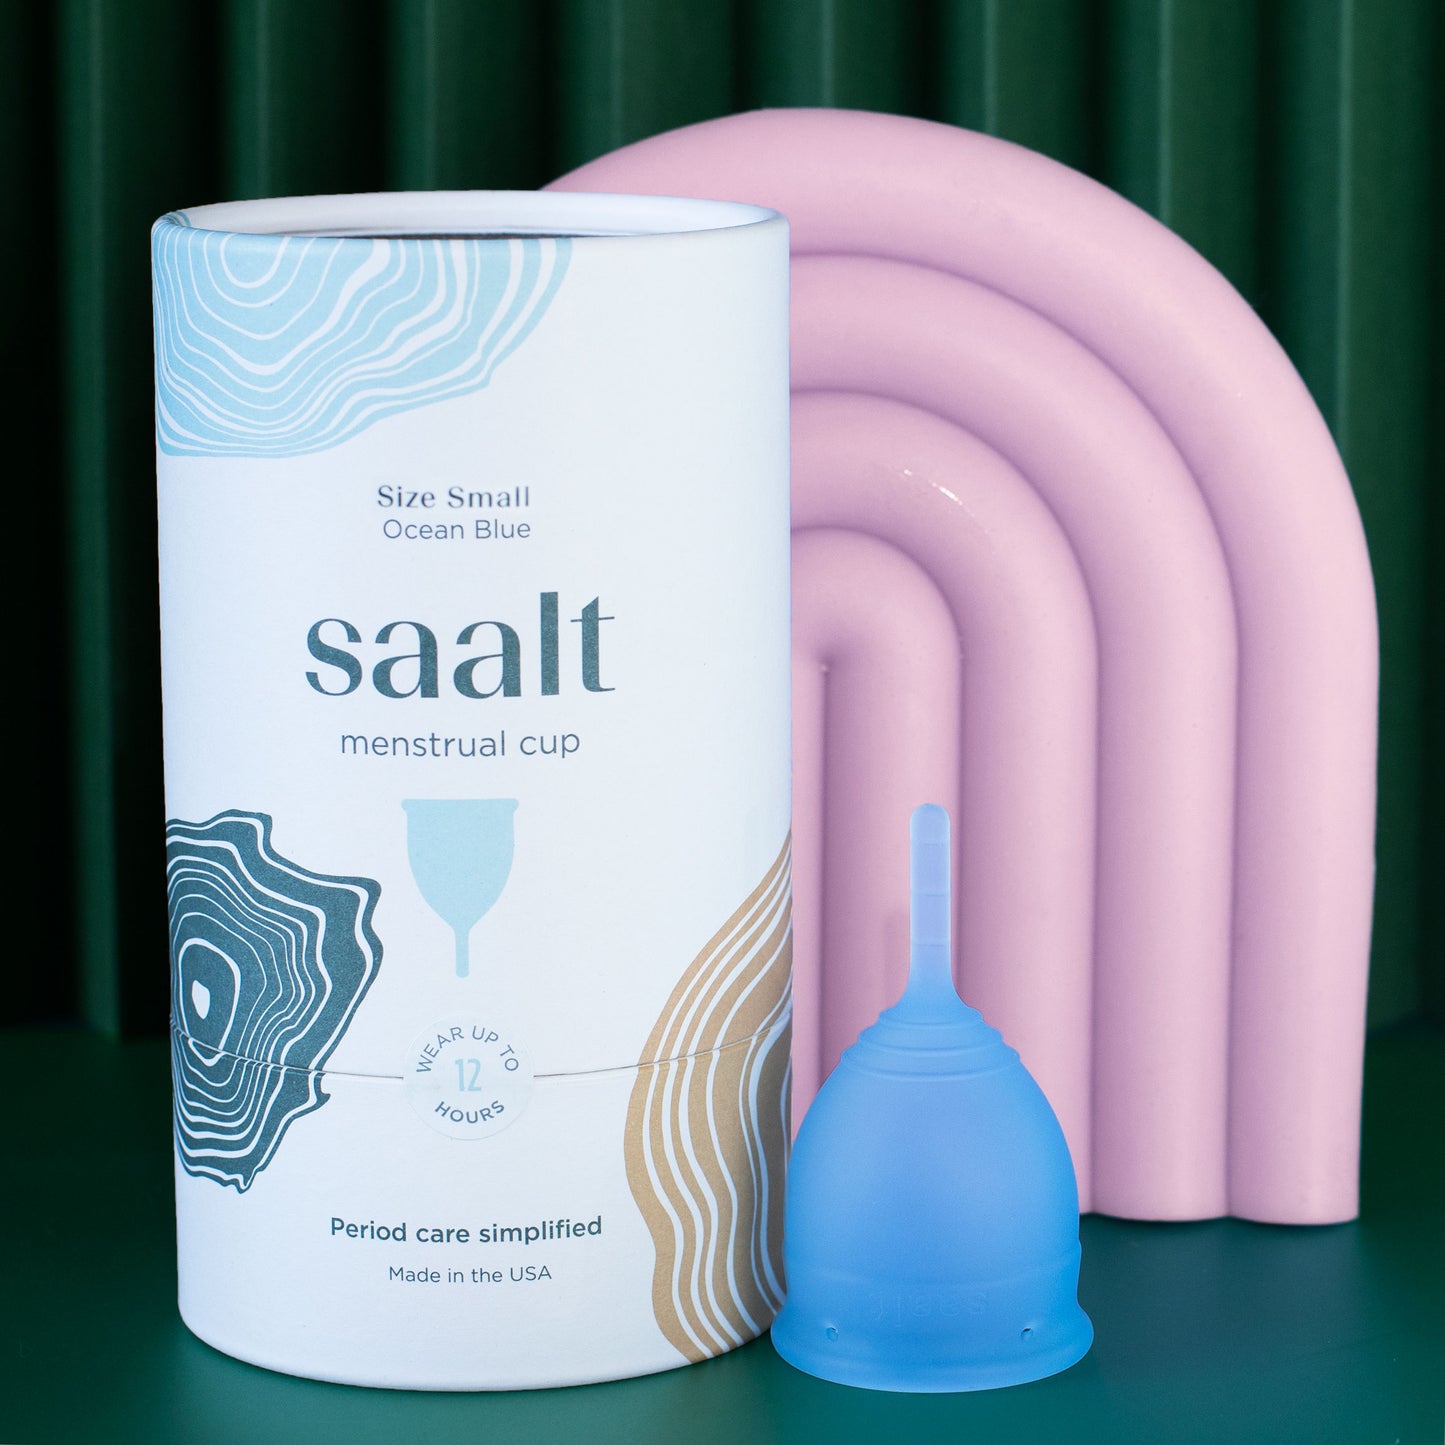 Saalt Small in Ocean Blue with packaging